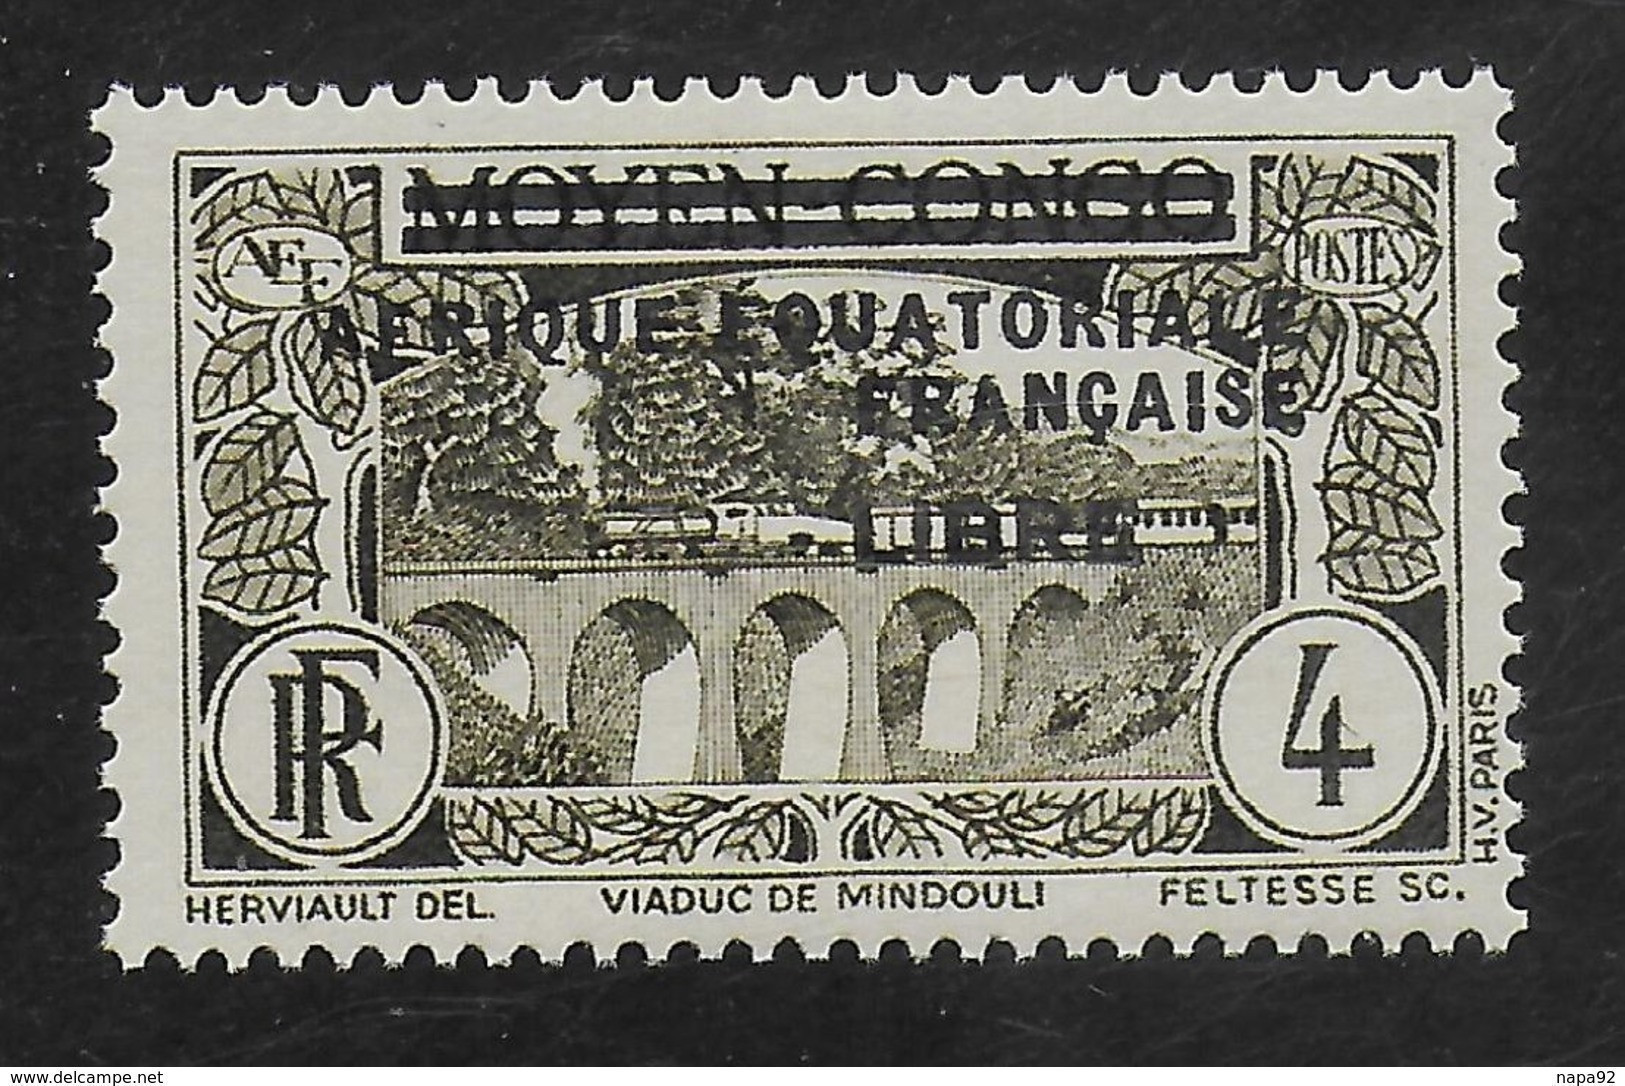 AFRIQUE EQUATORIALE FRANCAISE - AEF - A.E.F. - 1940 - YT 102** - Ungebraucht